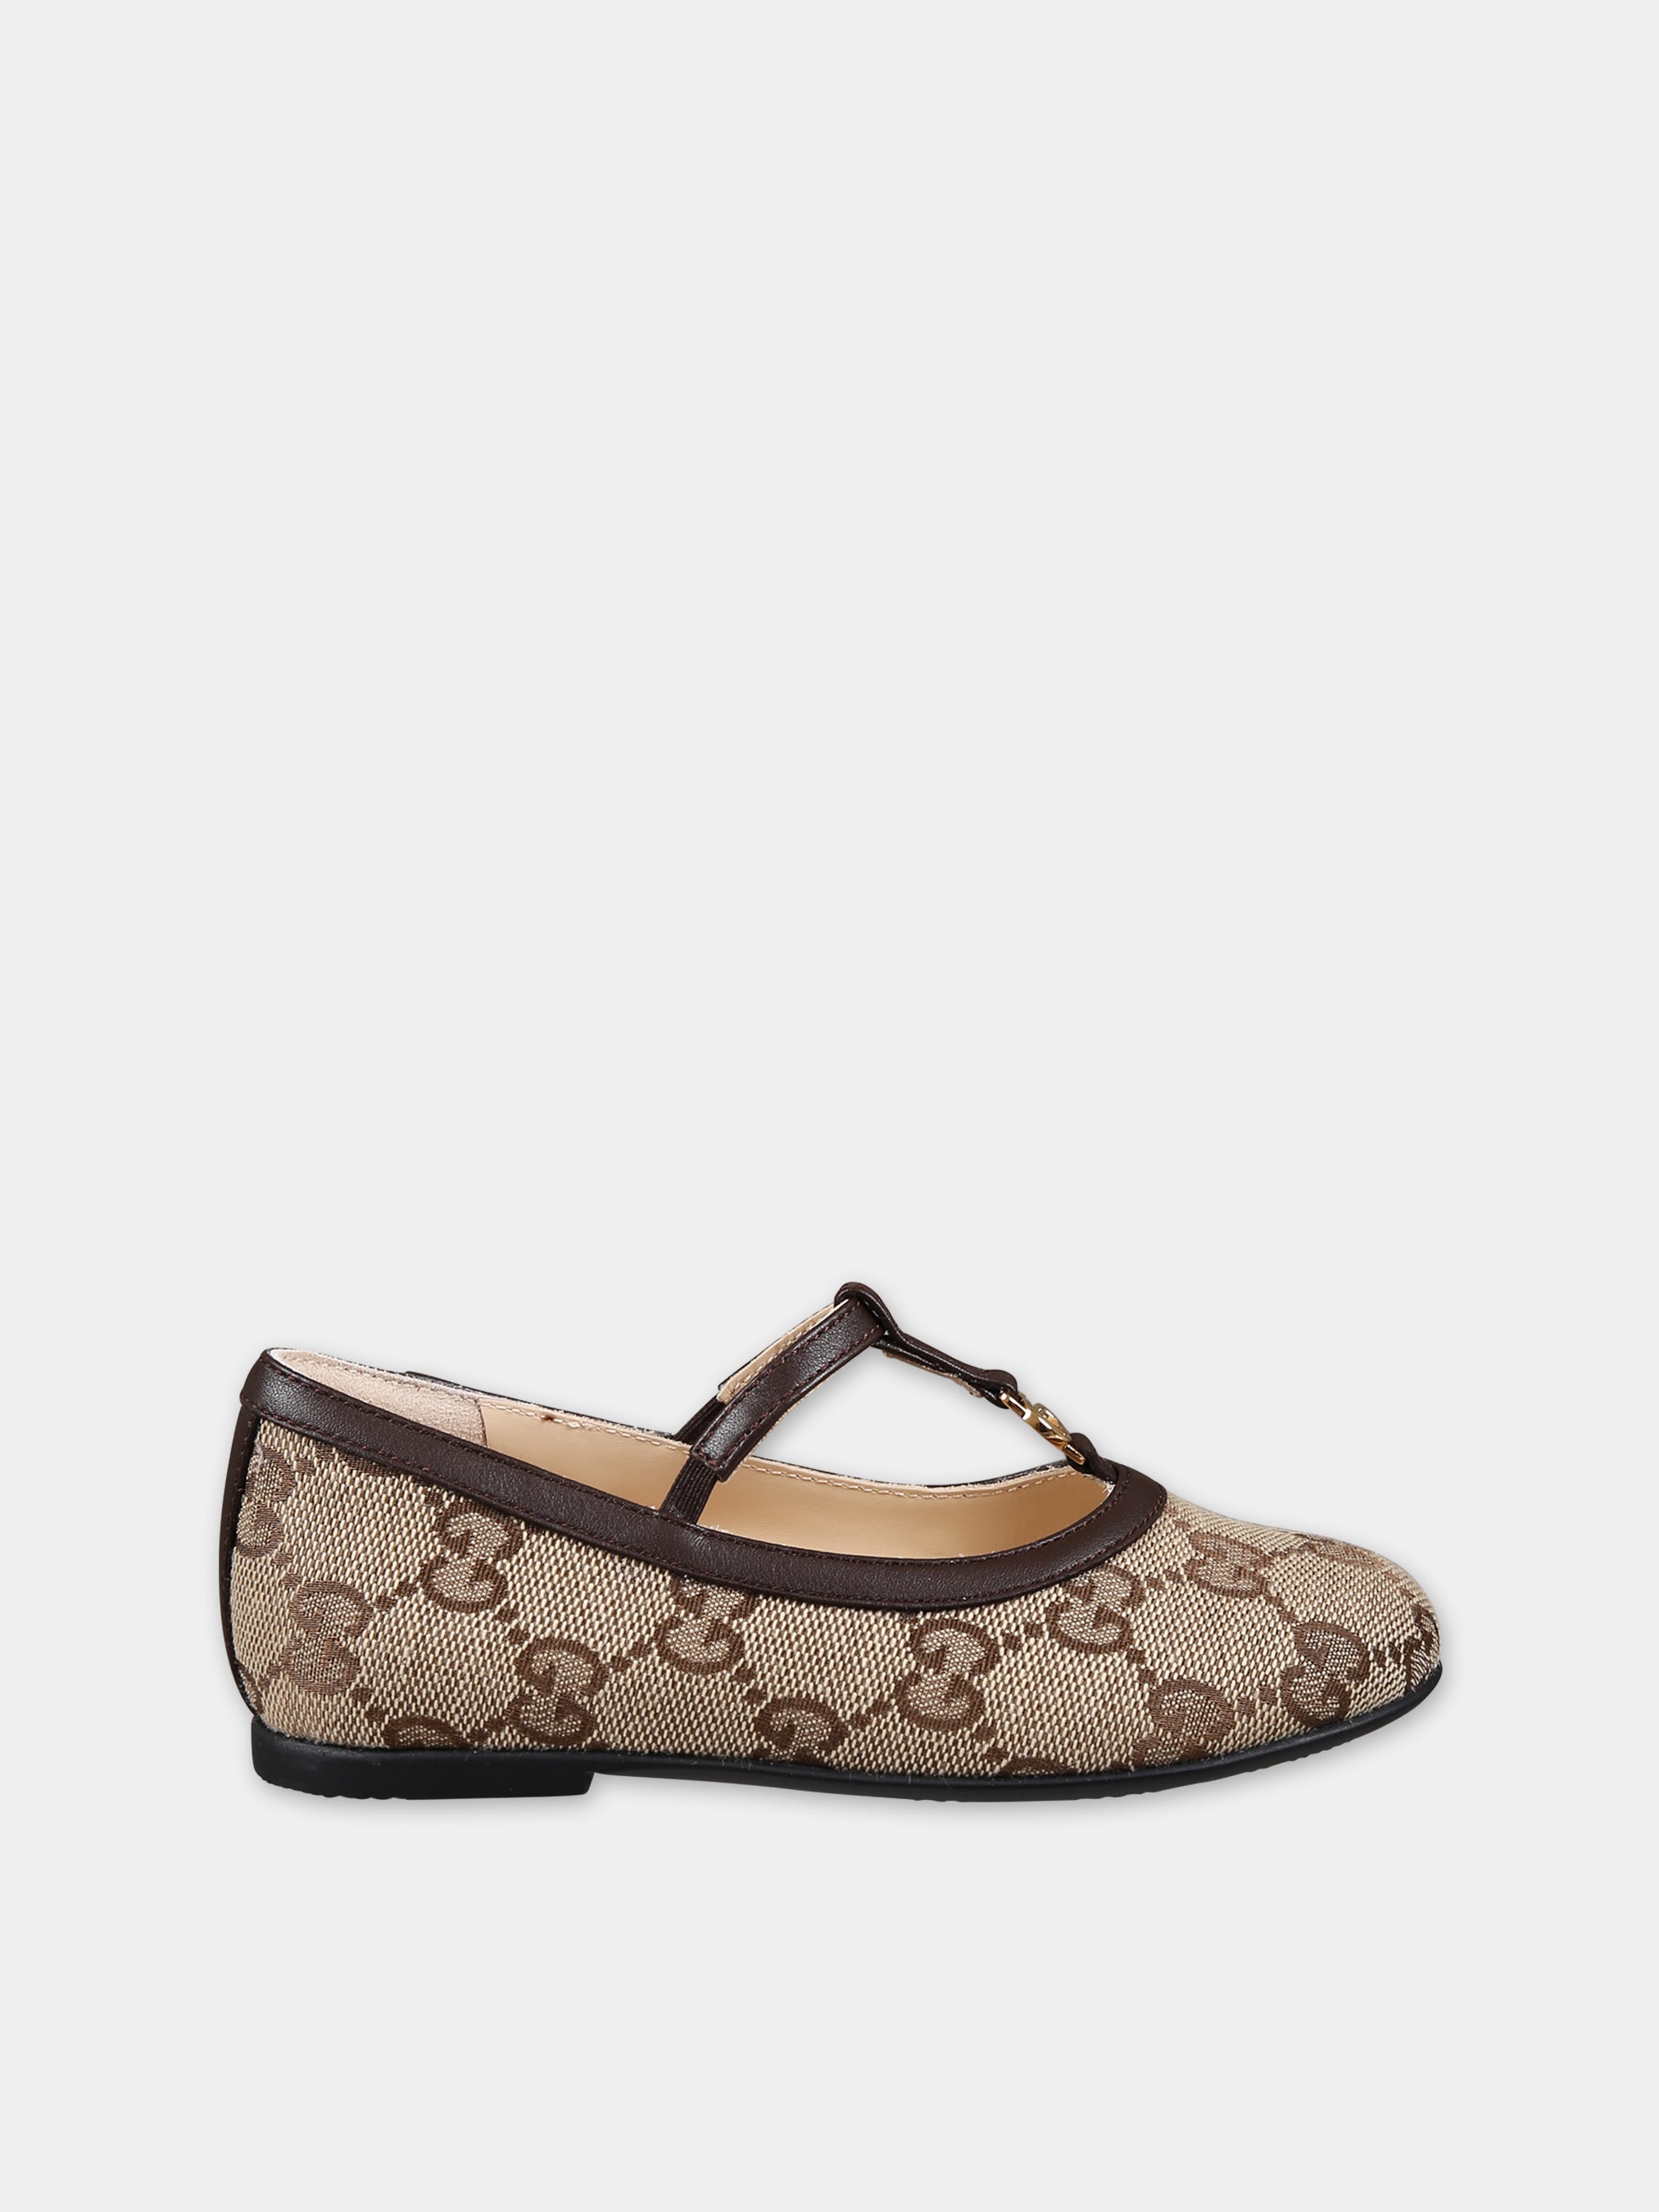 Gucci for Cinderella | Tacones, Zapatos mujer, Zapatos de tacon